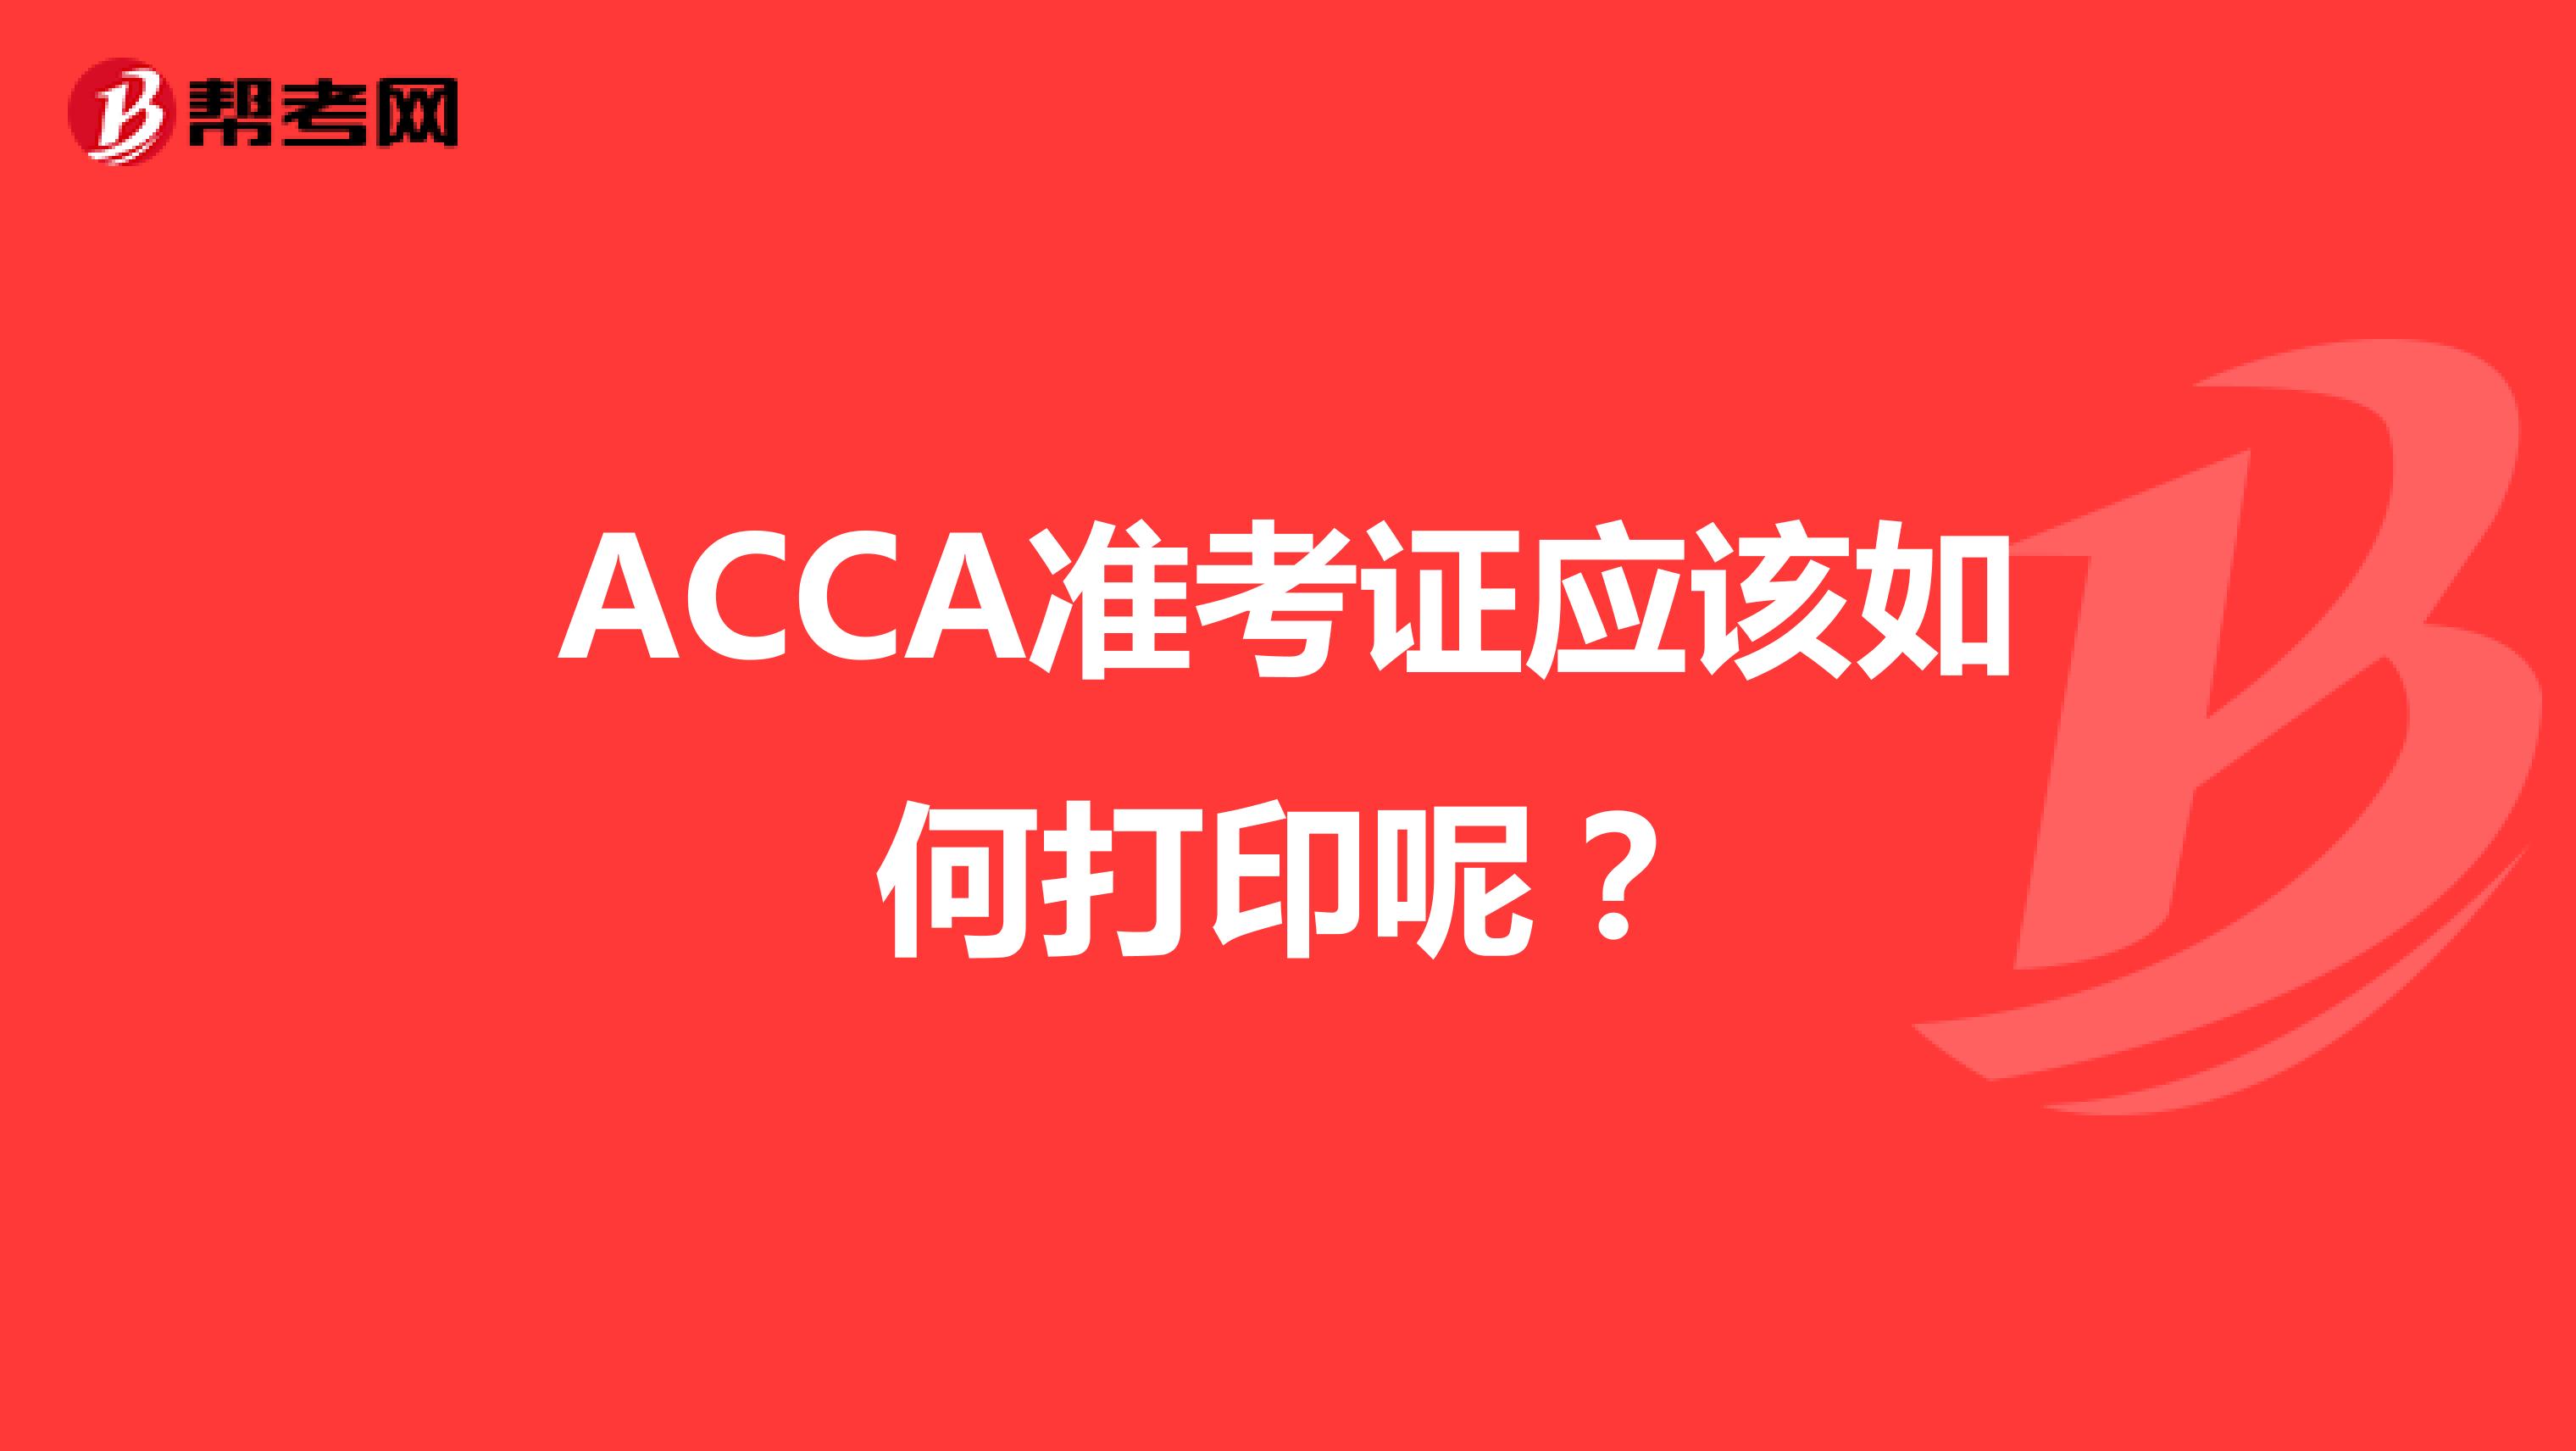 ACCA准考证应该如何打印呢？